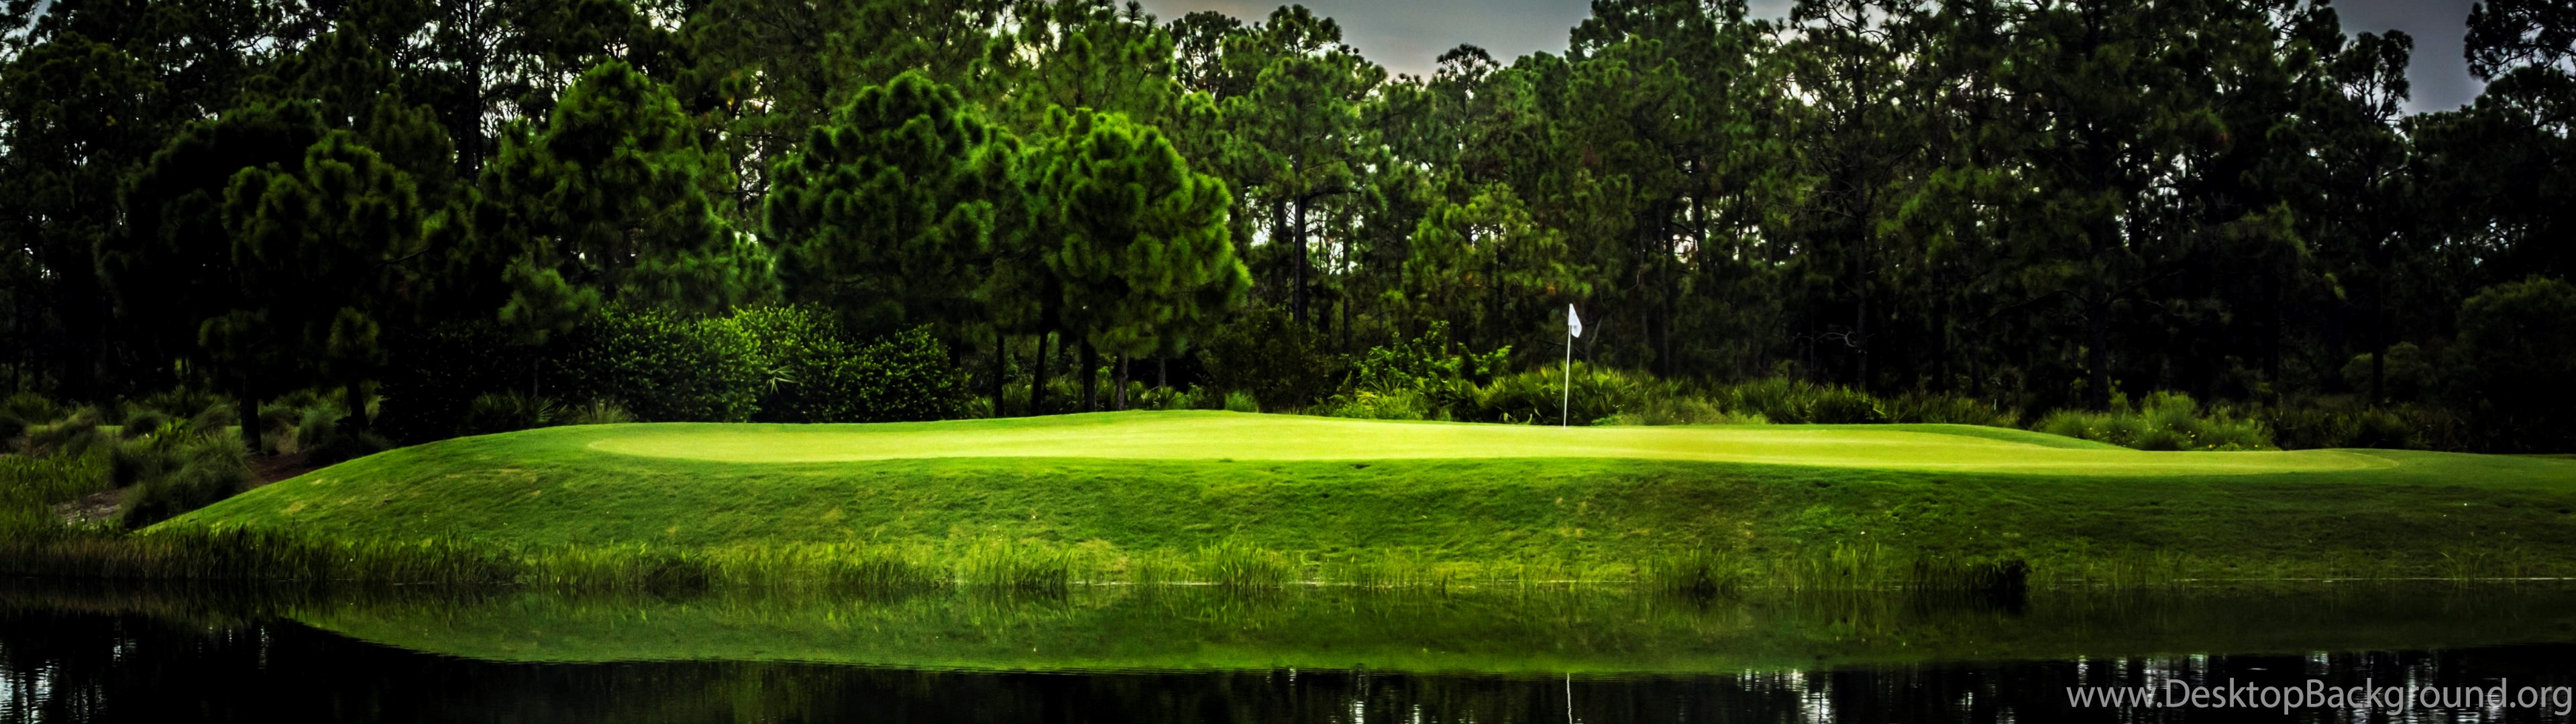 Sports Wallpaper Golf Widescreen Wallpapers High Definition HD 3840x1080